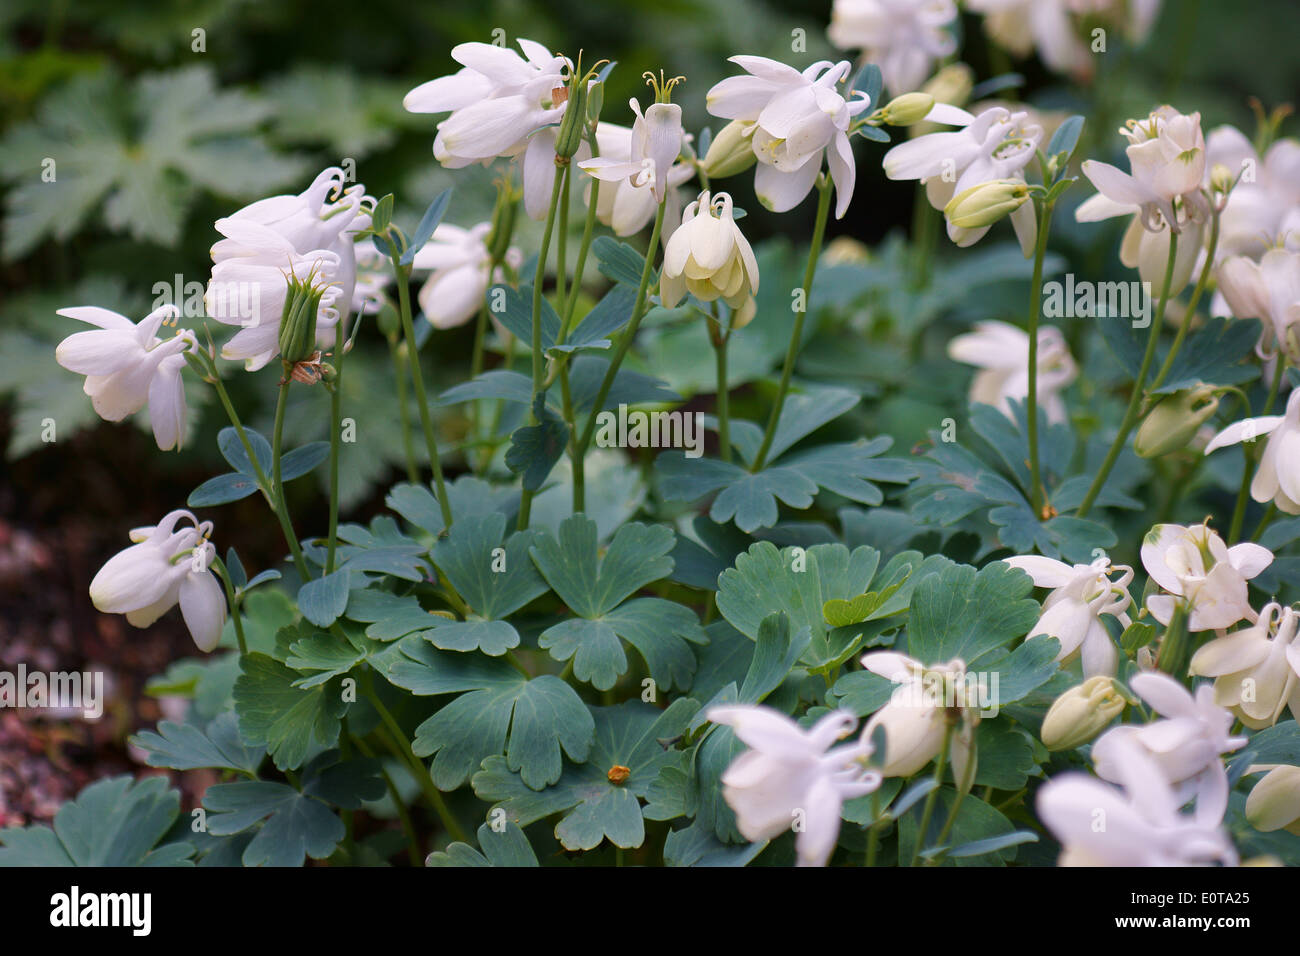 Columbine Aquilegia flabellata flowers close up Stock Photo